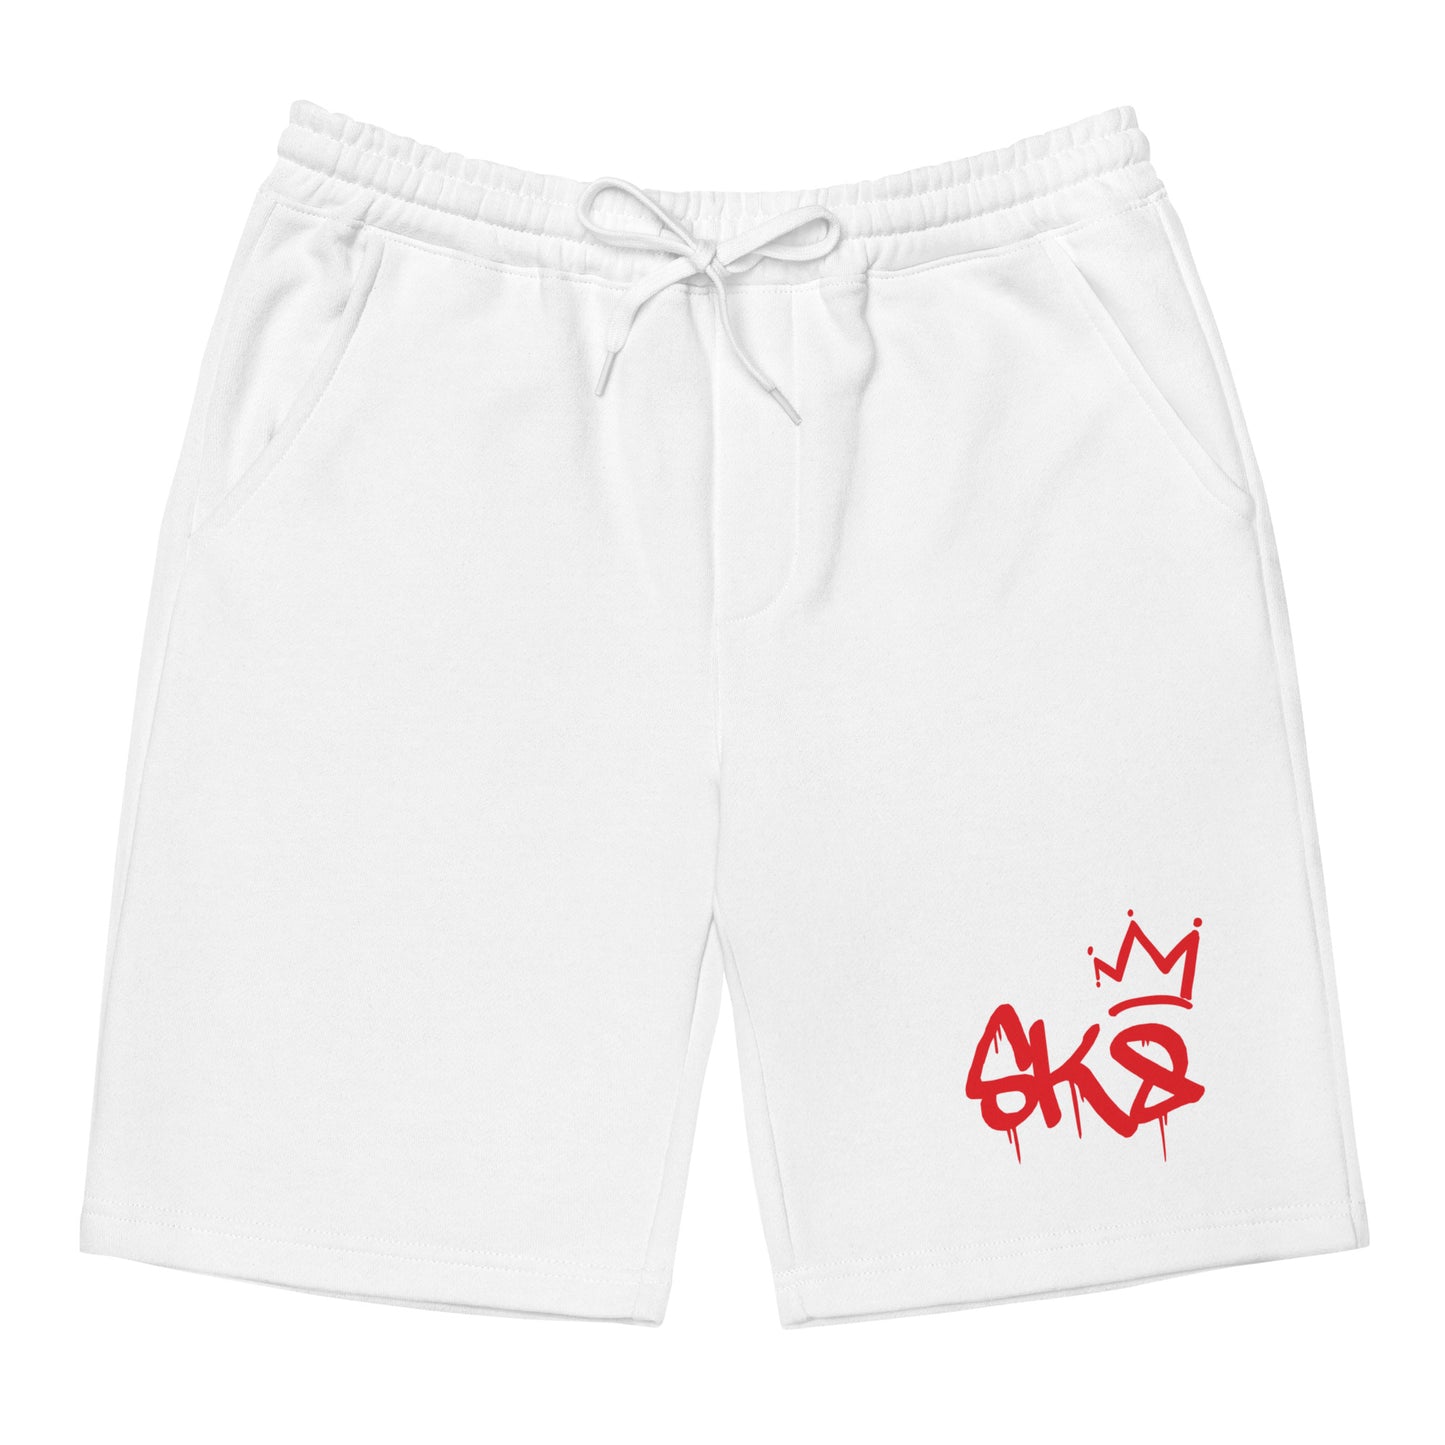 SK8 (Logo) Men's fleece shorts